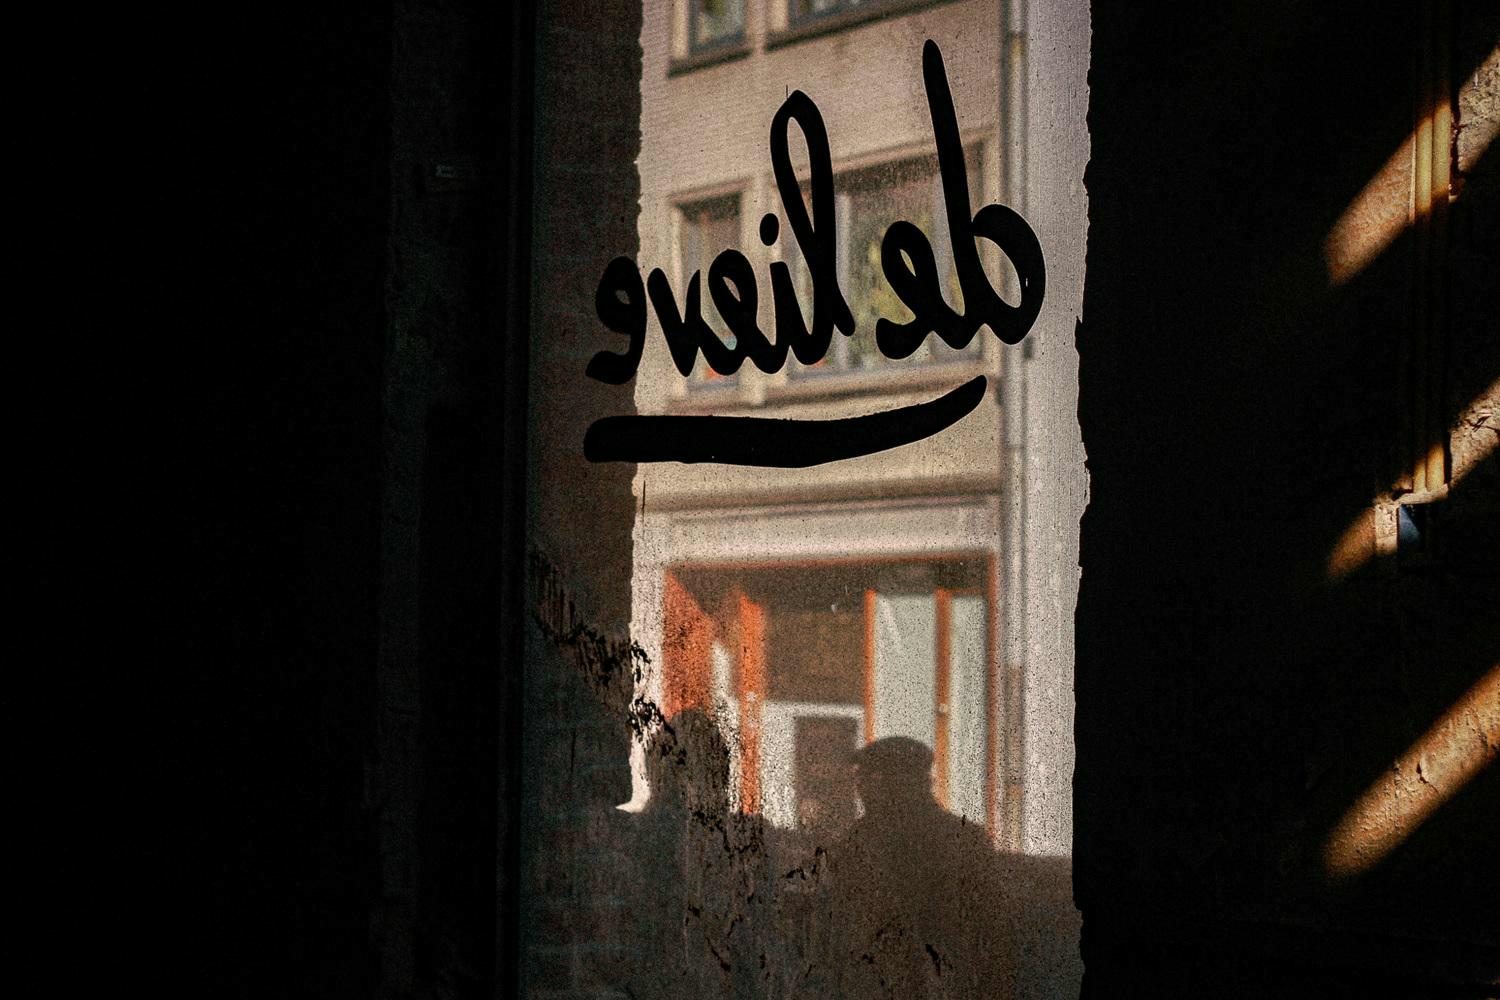 Oude logo van De Lieve op een raam in Gent